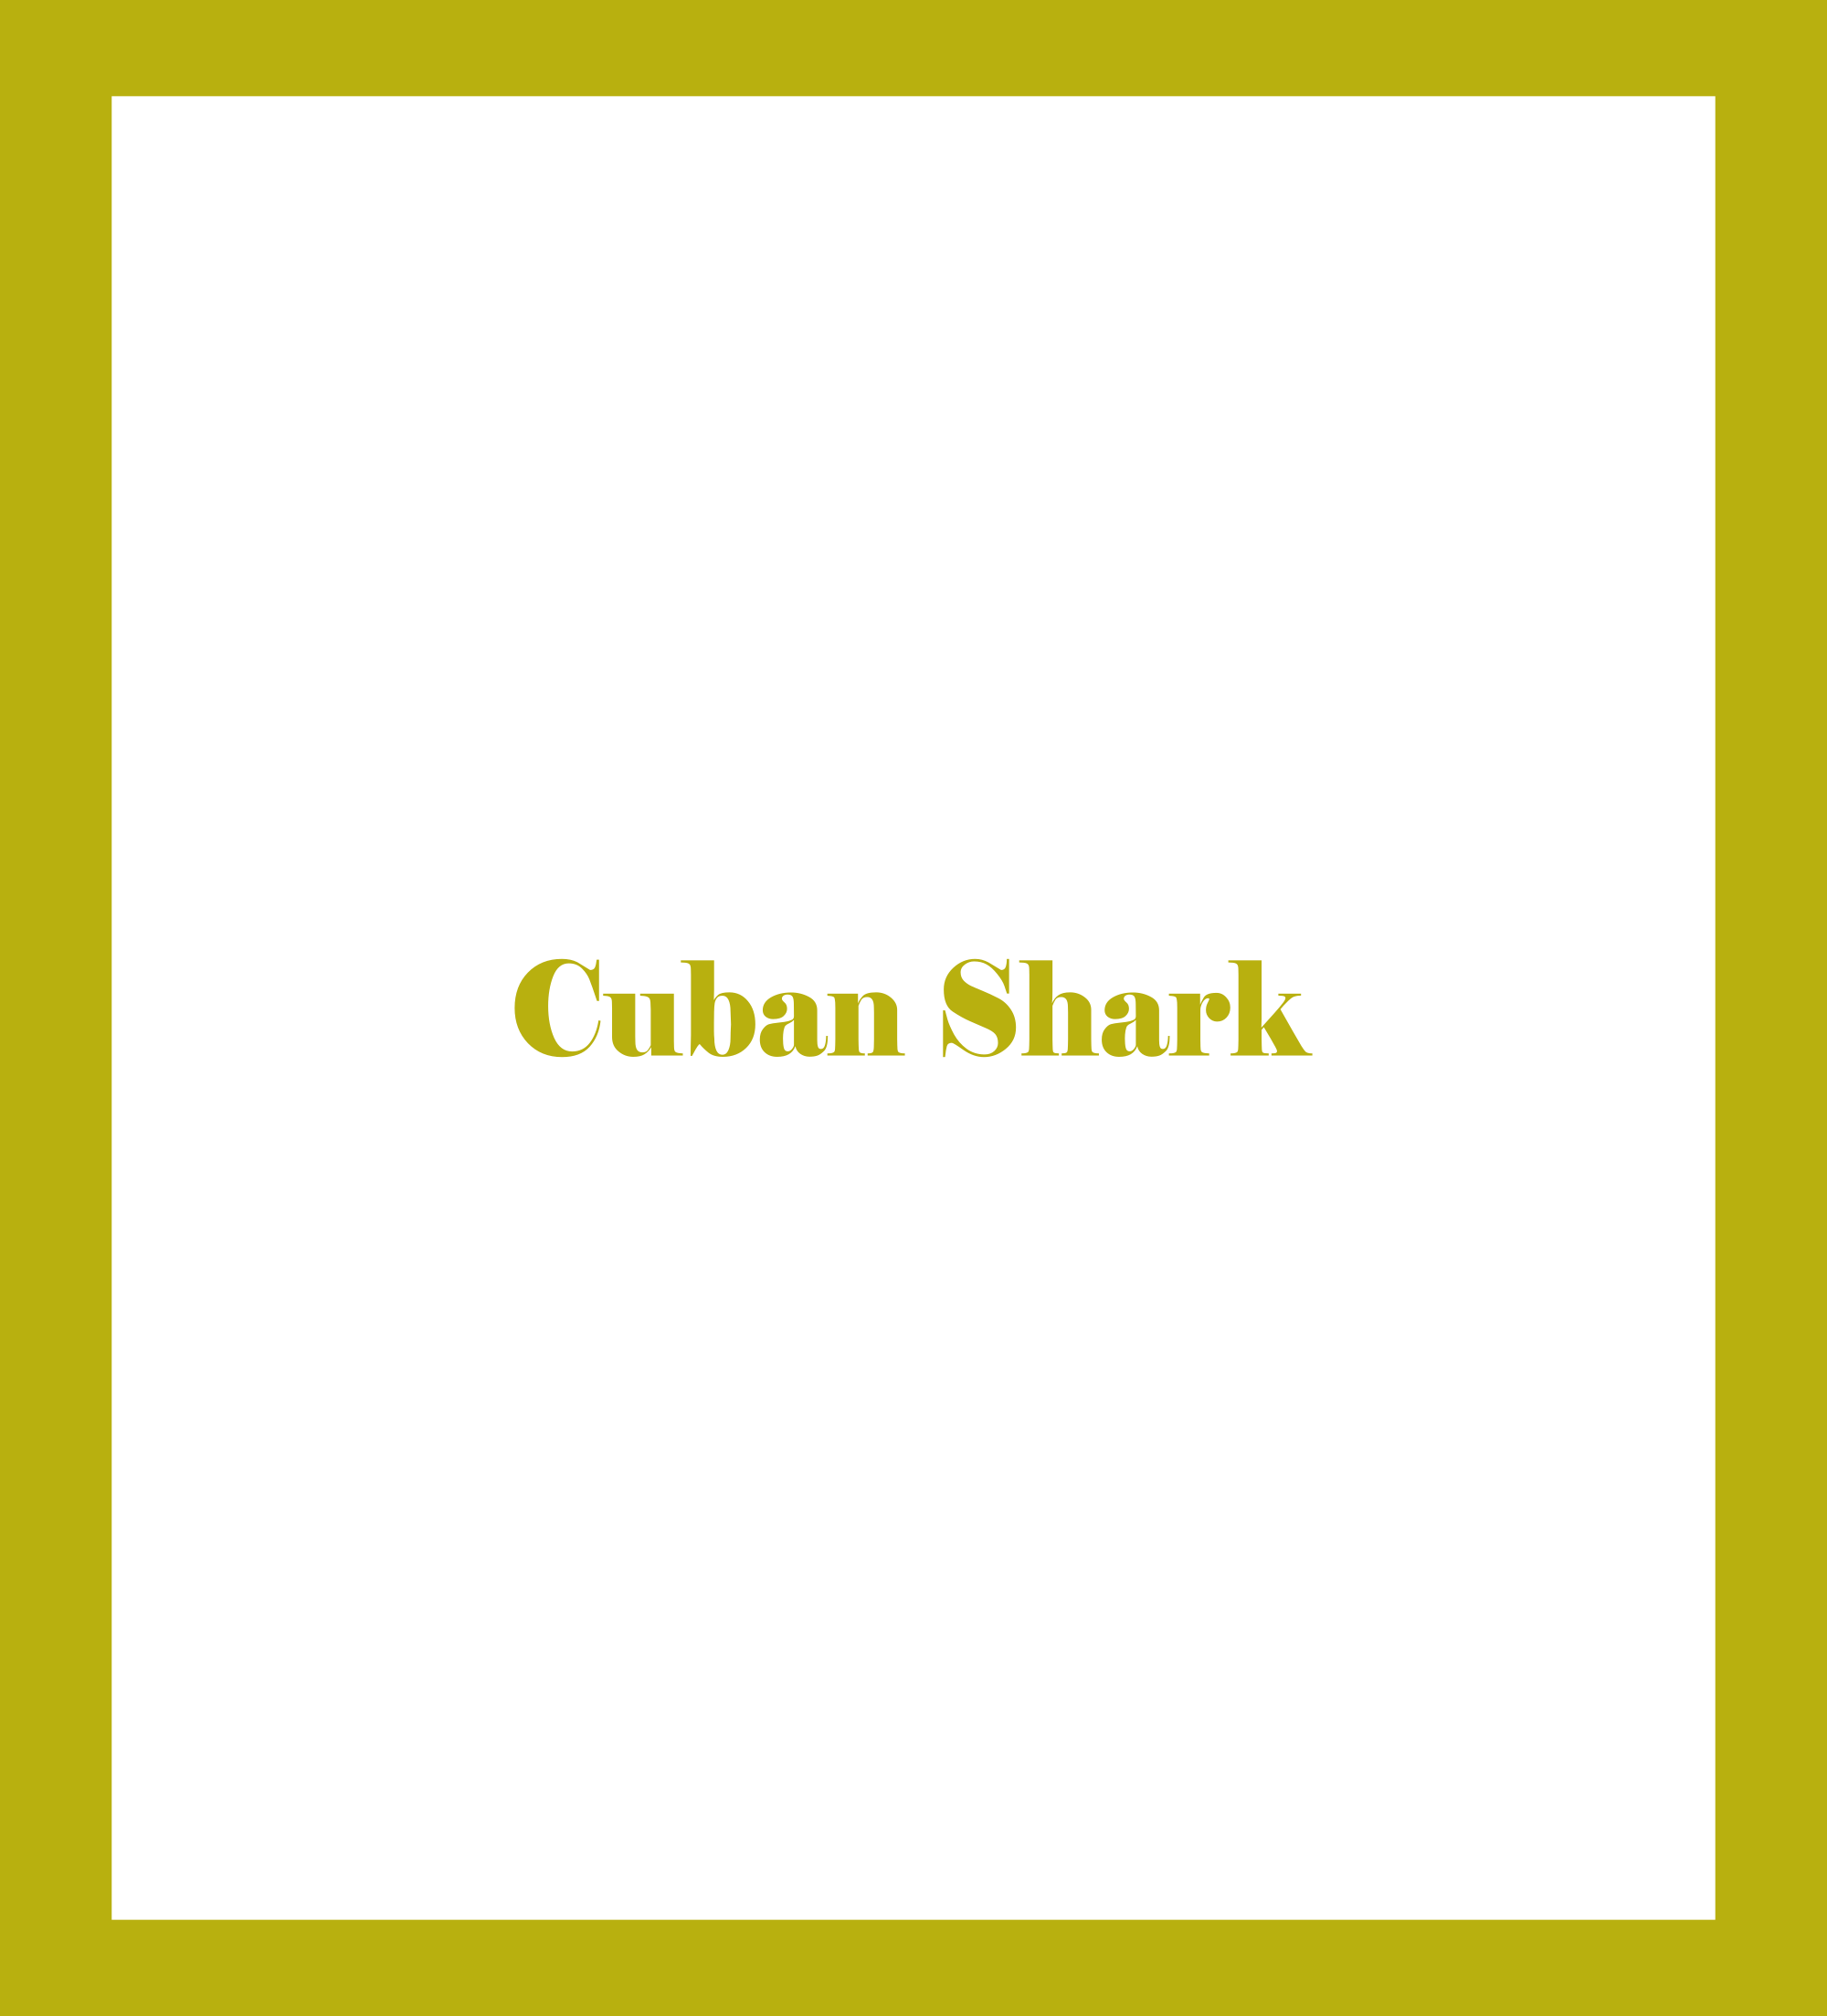 Caratula de Cuban Shark (El monstruo de Cuba) 